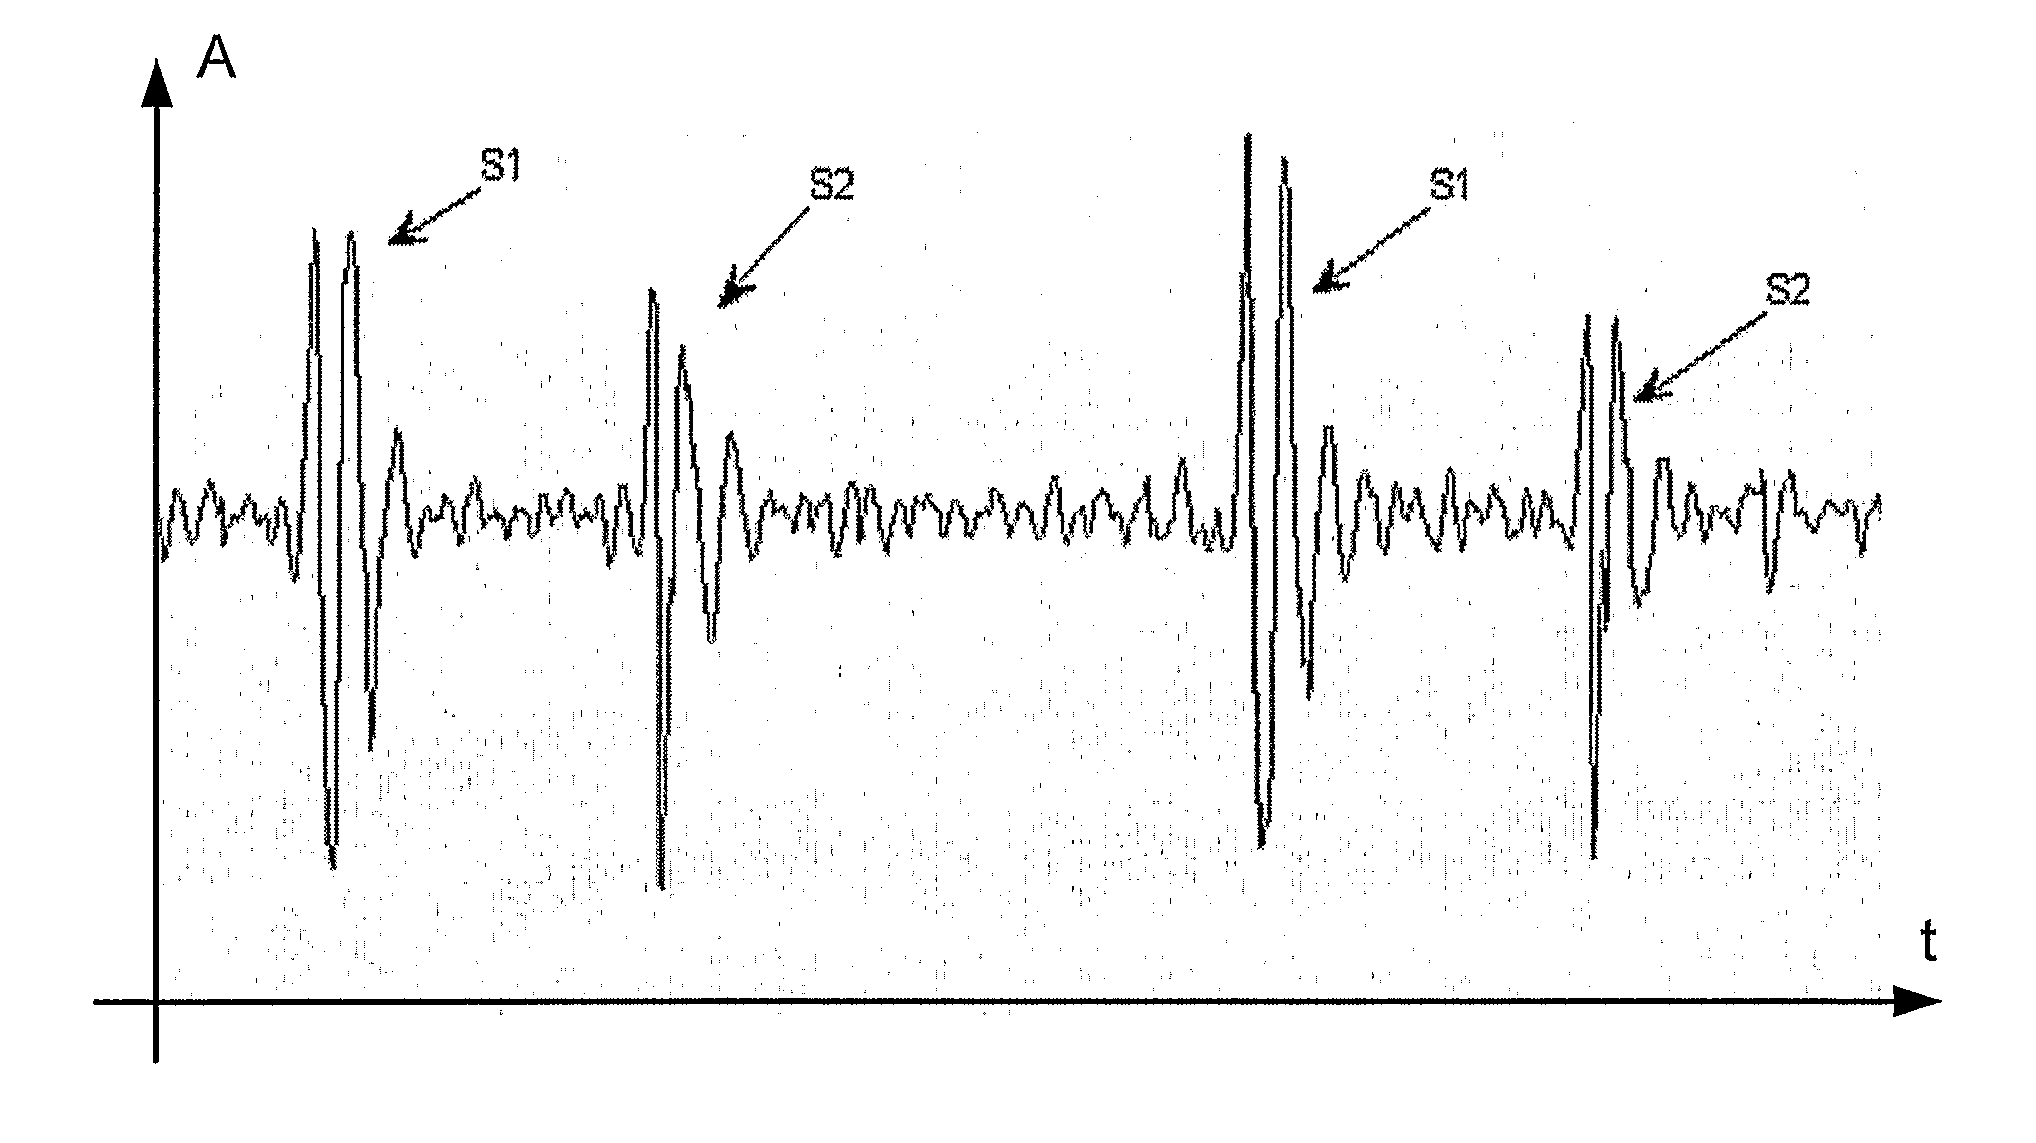 Multi parametric classification of cardiovascular sounds